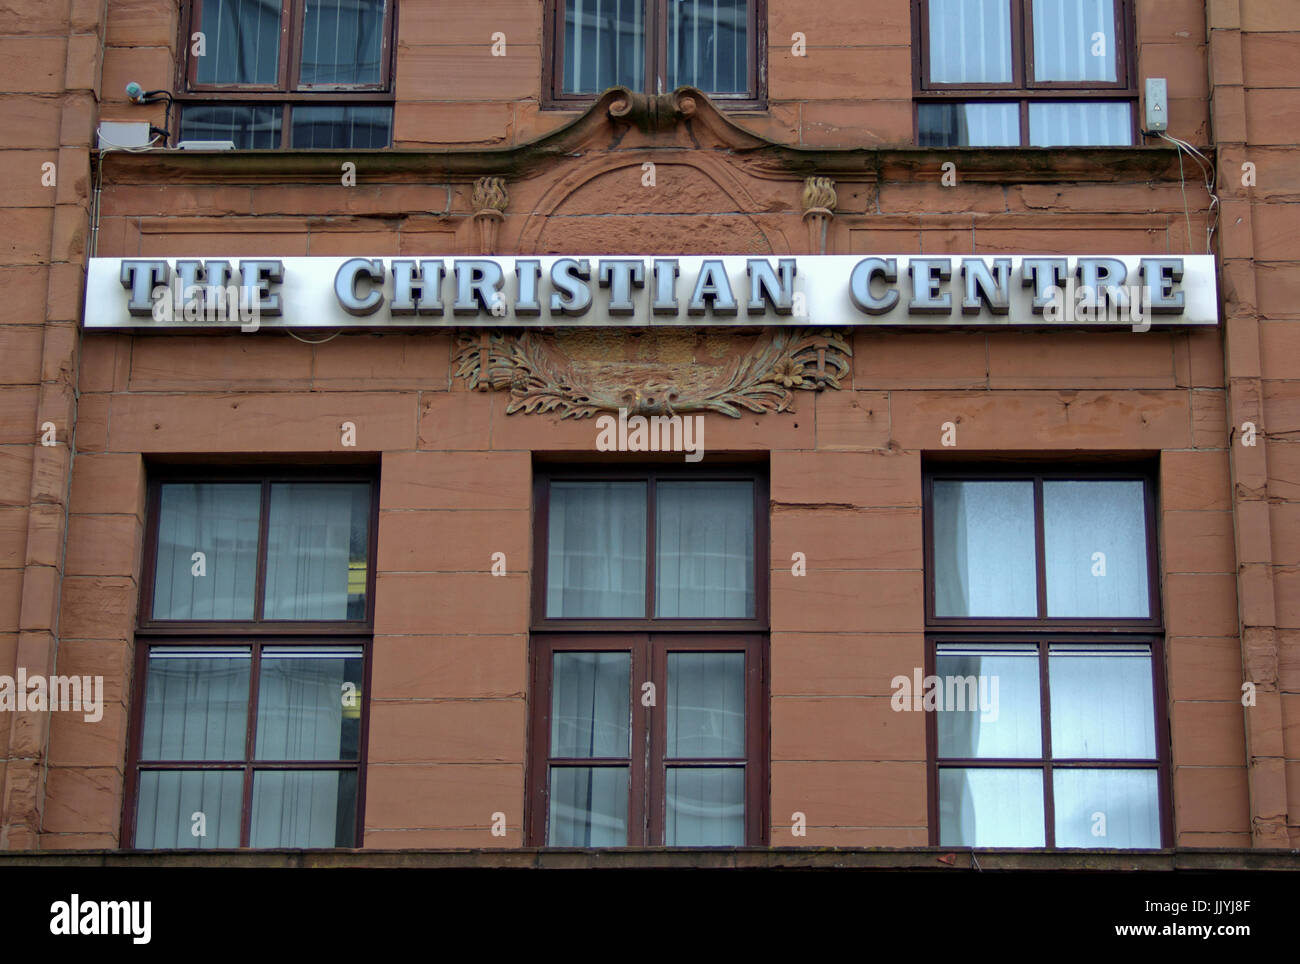 Iglesia de la ciudad de Glasgow con Café Connect, el centro cristiano signo en edificio de piedra arenisca roja Foto de stock